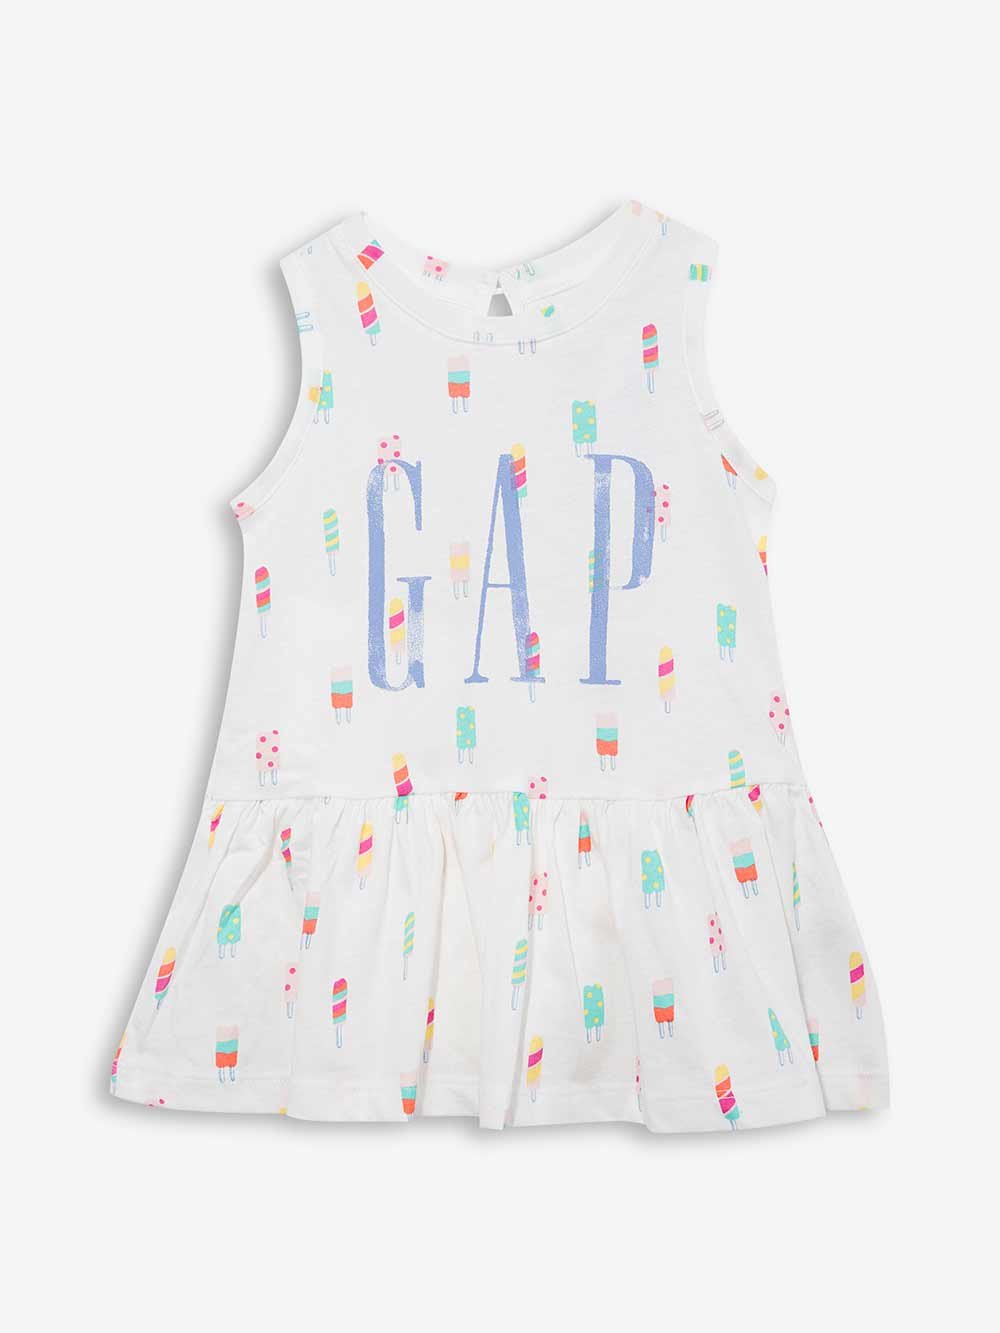 Gap Logo Kolsuz Elbise product image